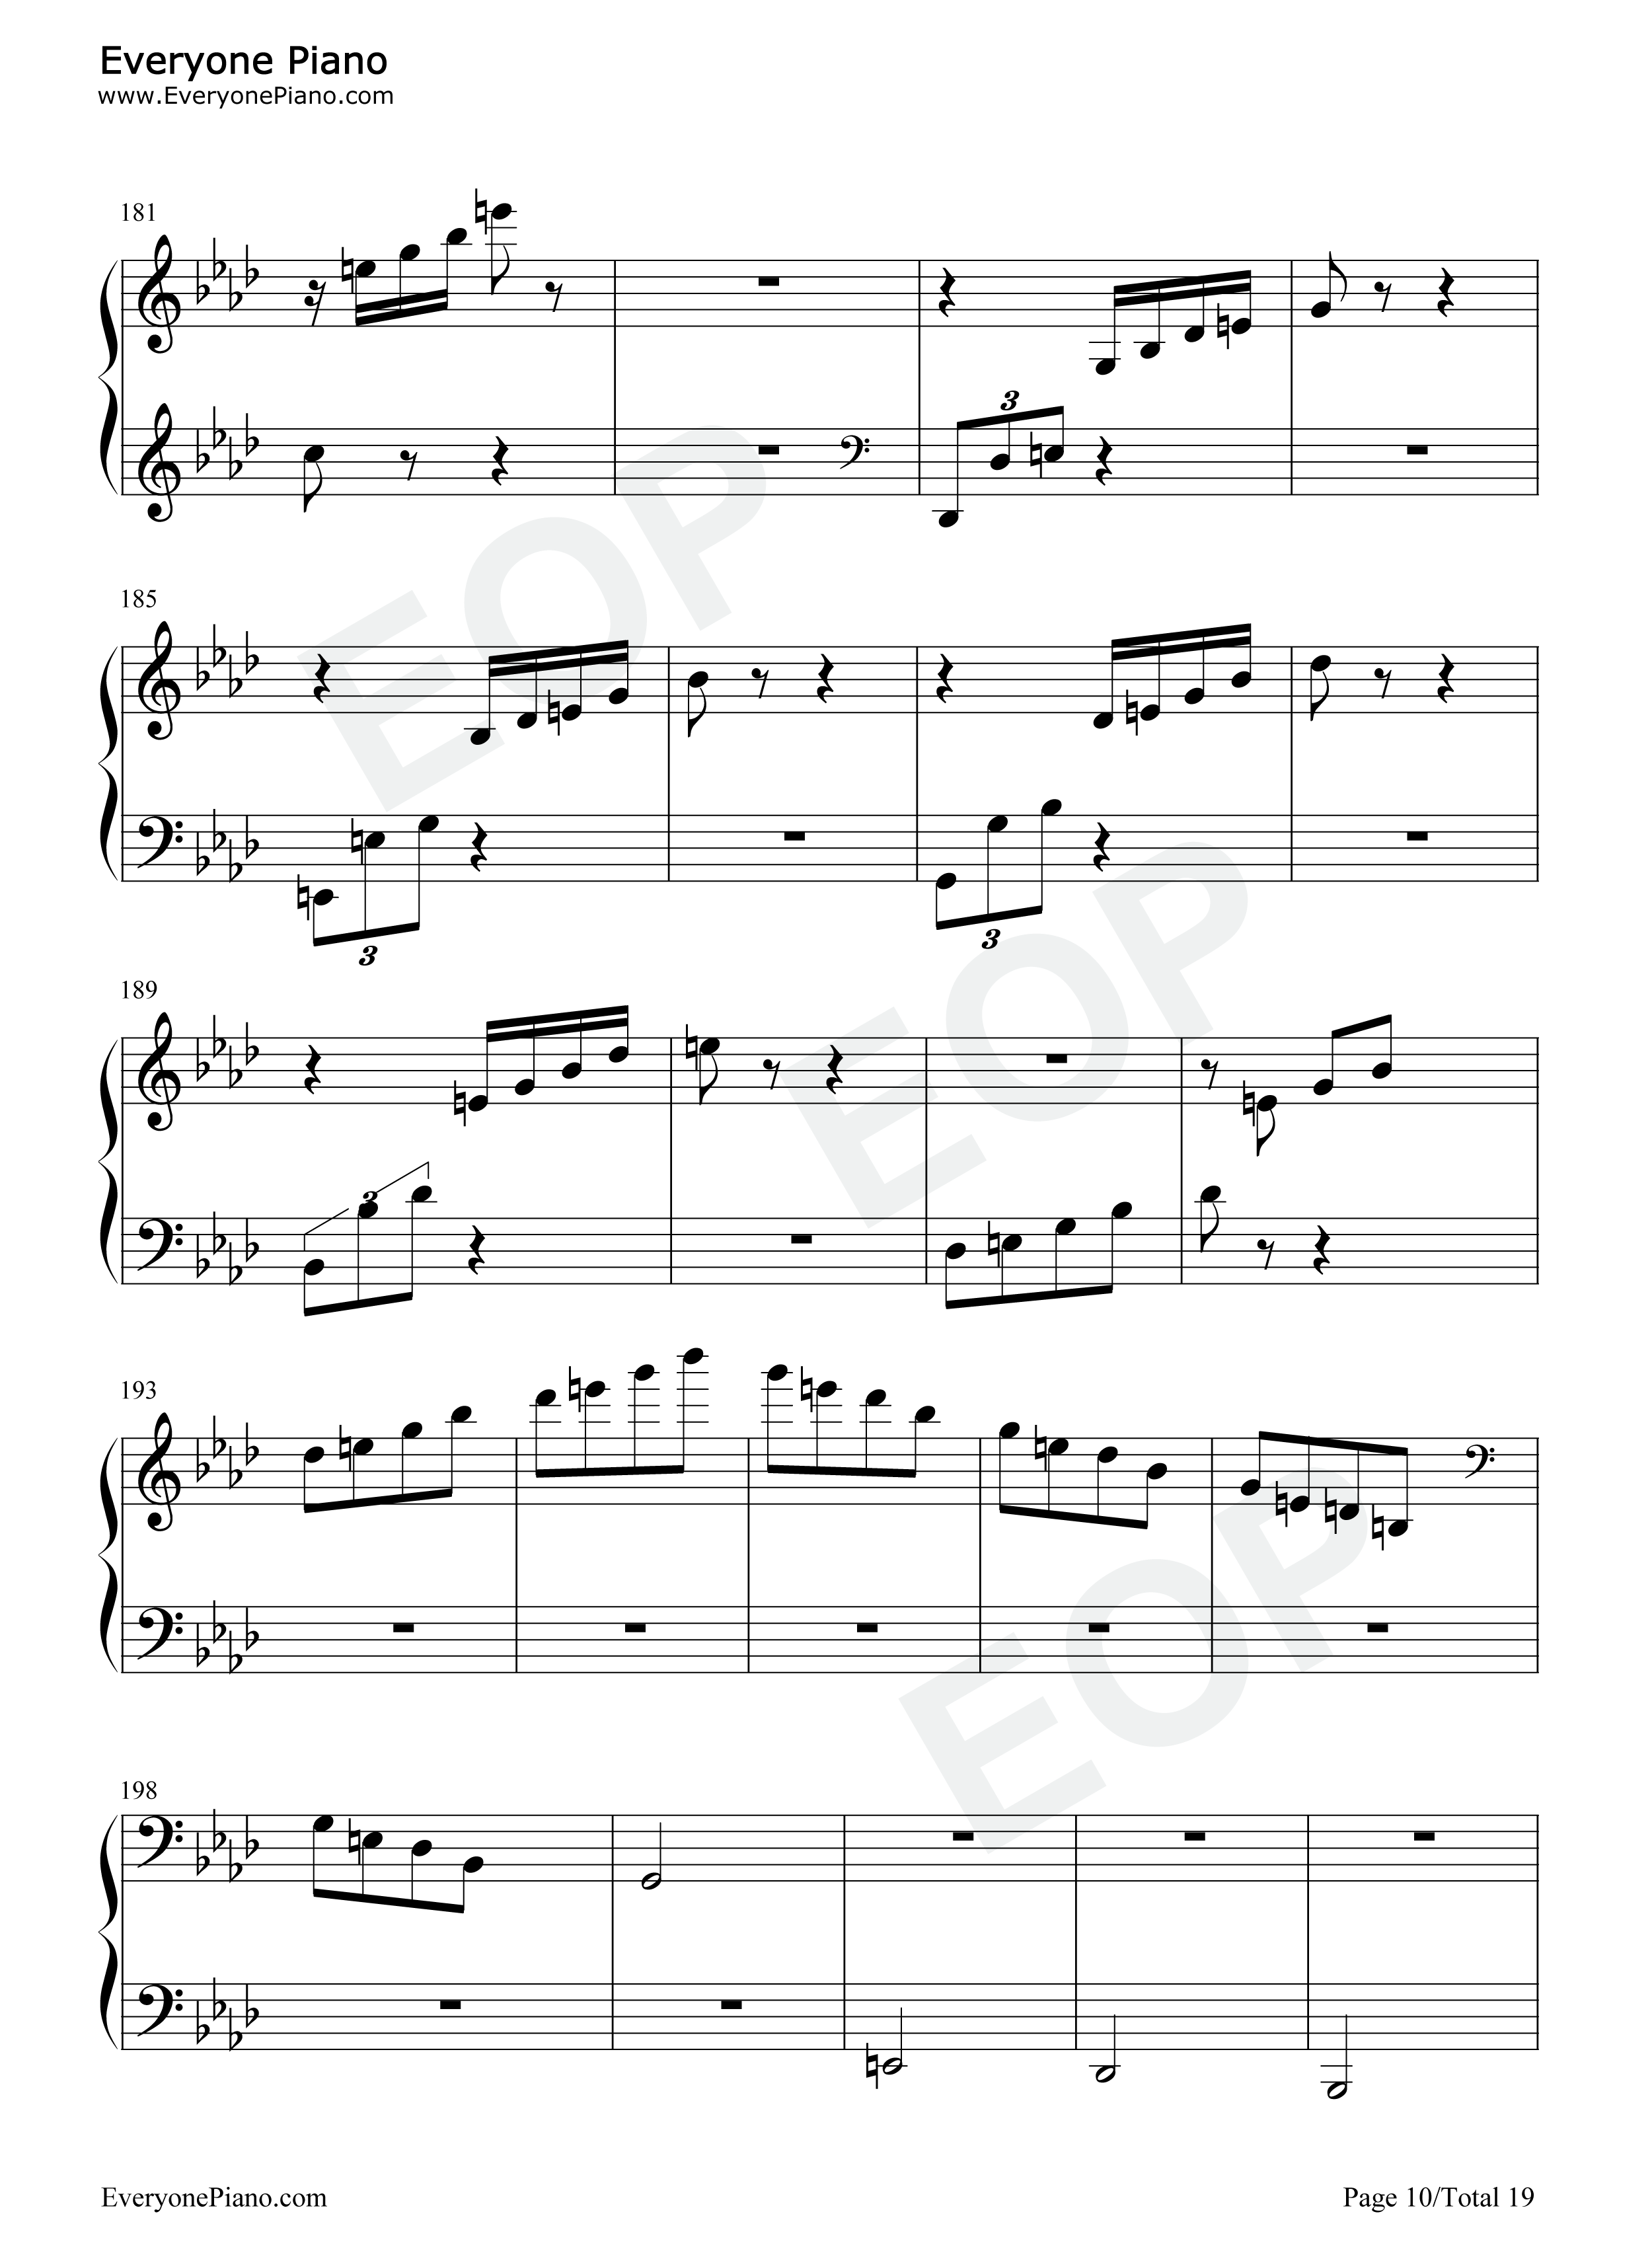 热情奏鸣曲第3乐章-第23钢琴奏鸣曲-贝多芬五线谱预览10